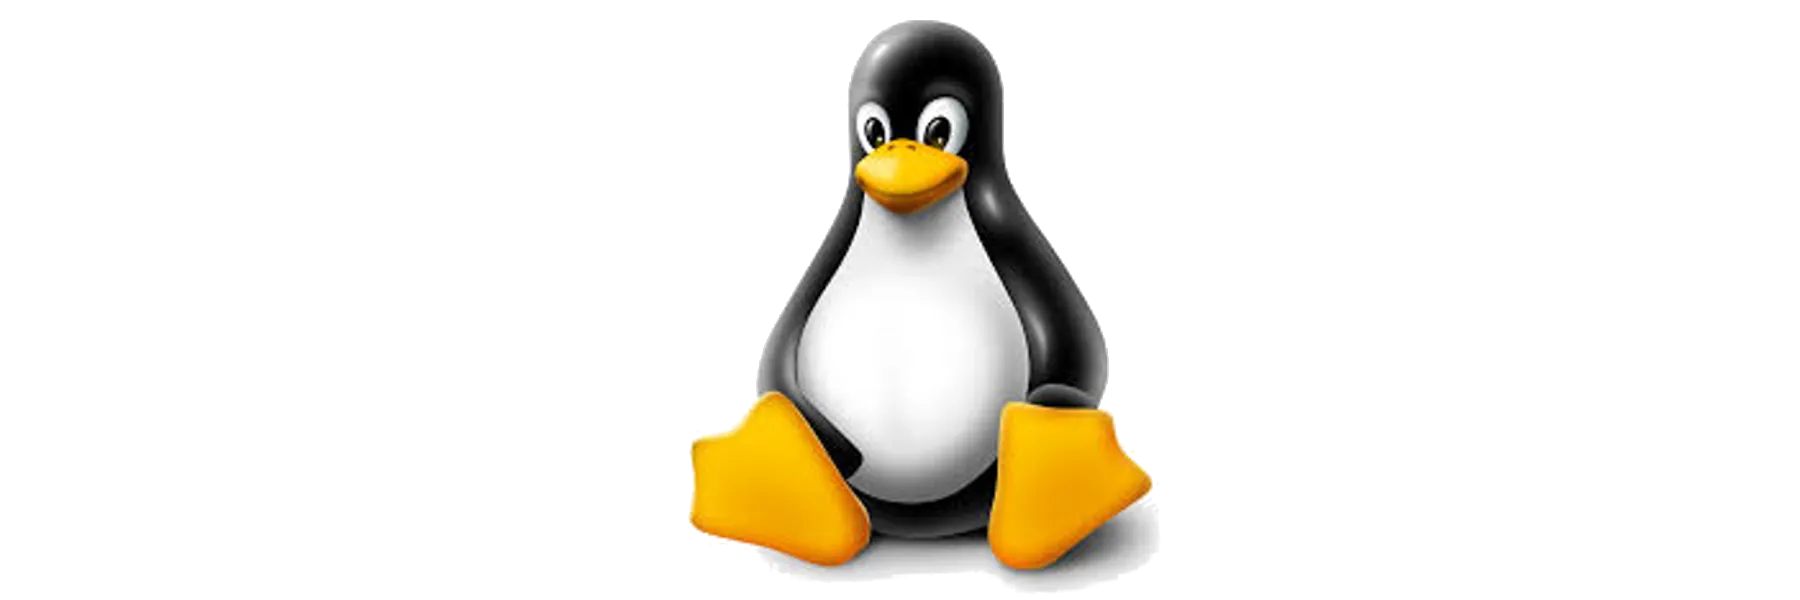 Linux ssh socks